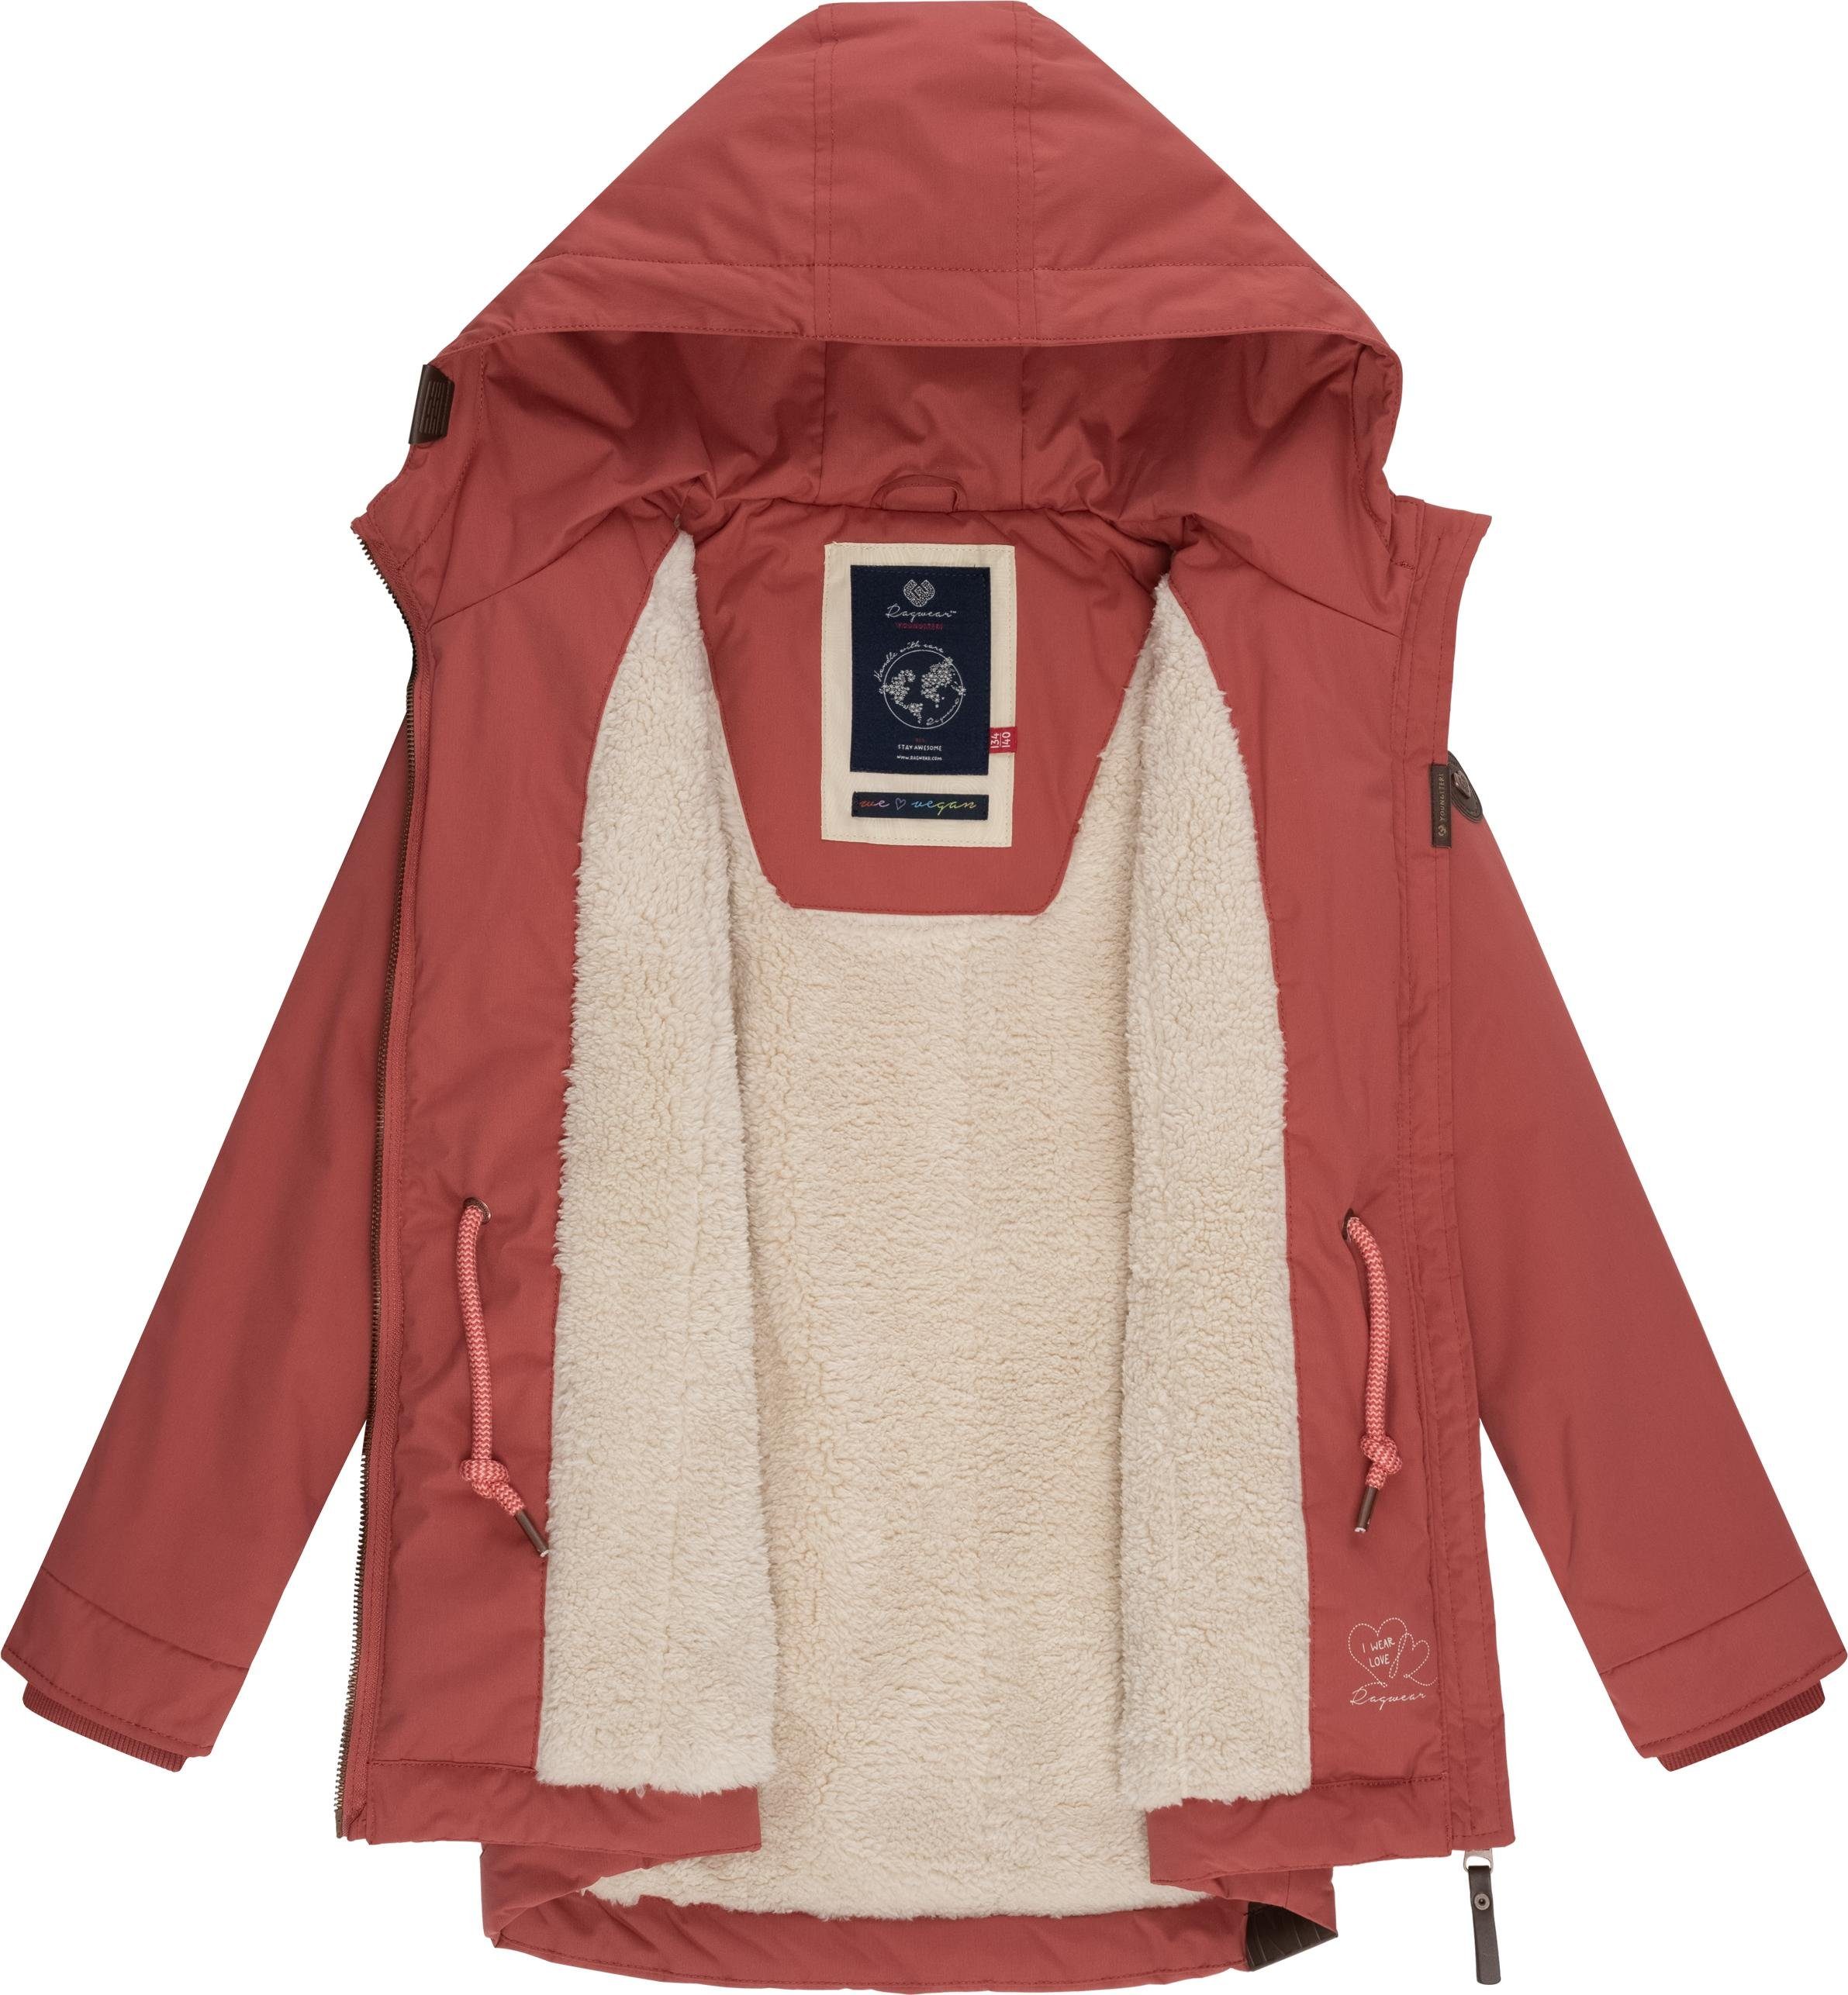 Jacke warmem flauschig Winterjacke mit Teddyfell-Innenfutter rosa Ragwear Layra